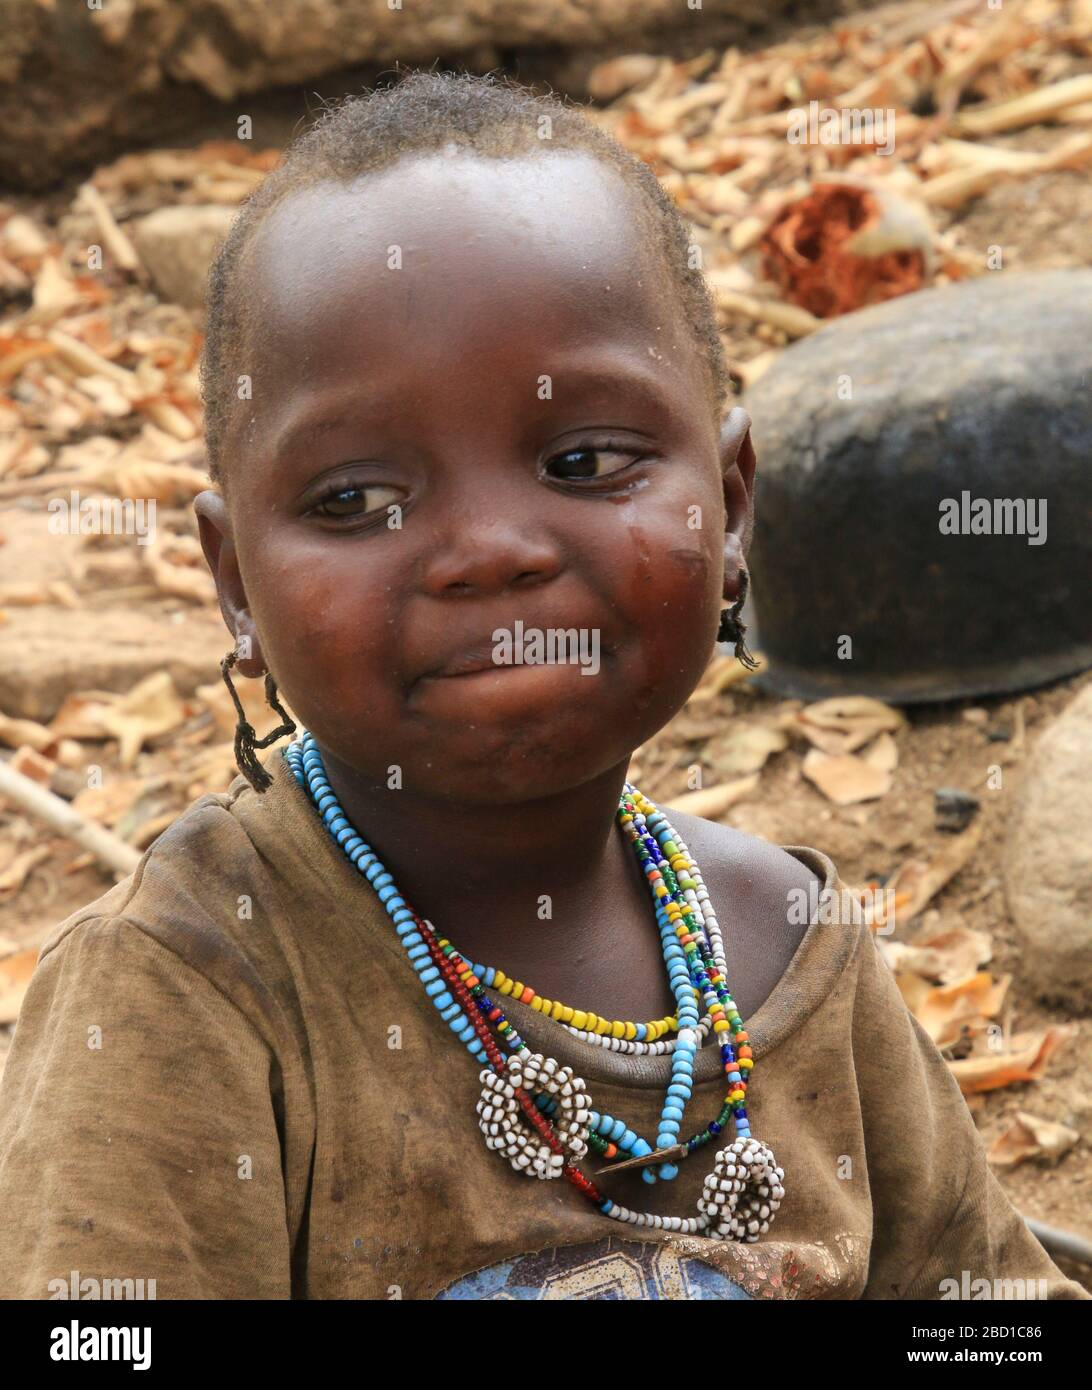 Afrika, Tansania, Lake Eyasi, junges männliches Hadza-Kind. Hadza, oder Hadzabe, sind eine indigene Ethnie im nordzentralen Tansania, die um den See lebt Stockfoto